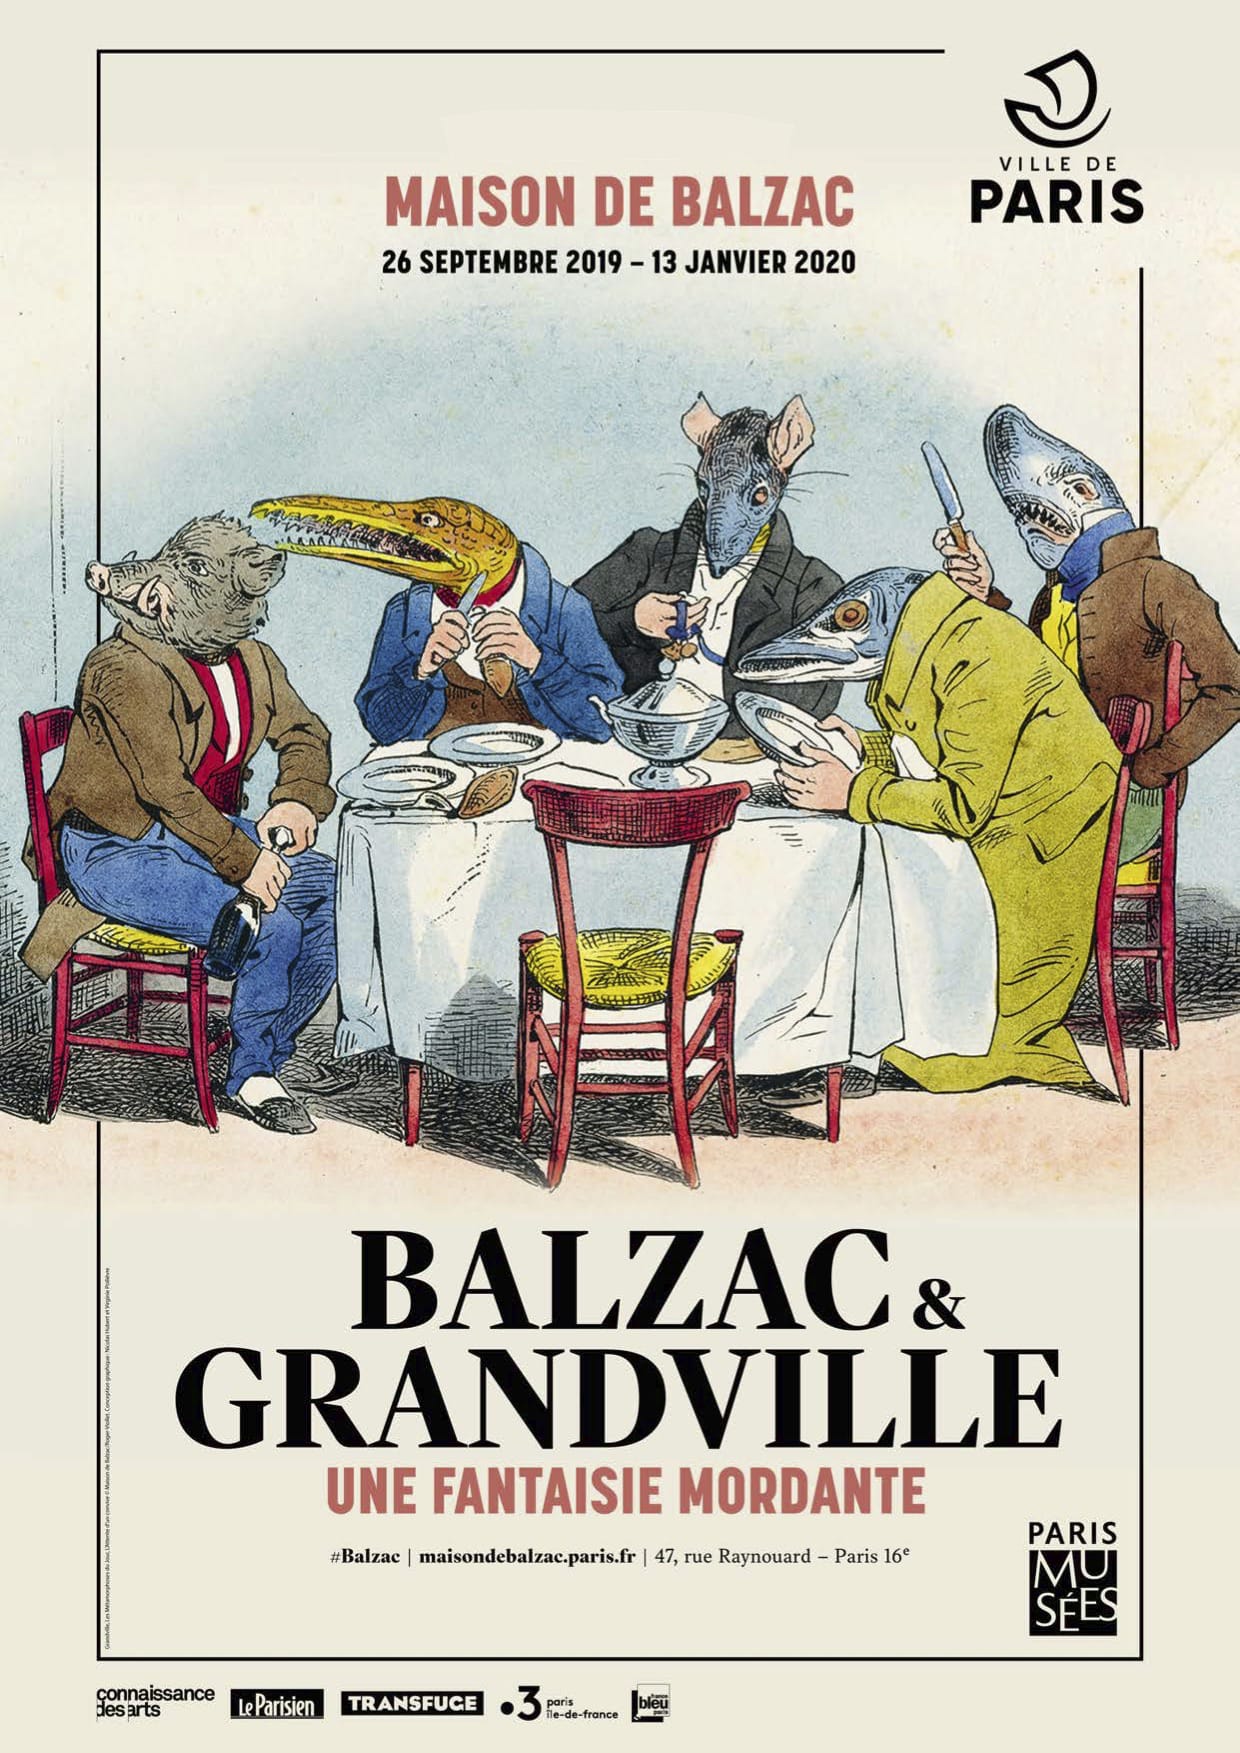 Exposition "Balzac & Granville, une fantaisie mordante"